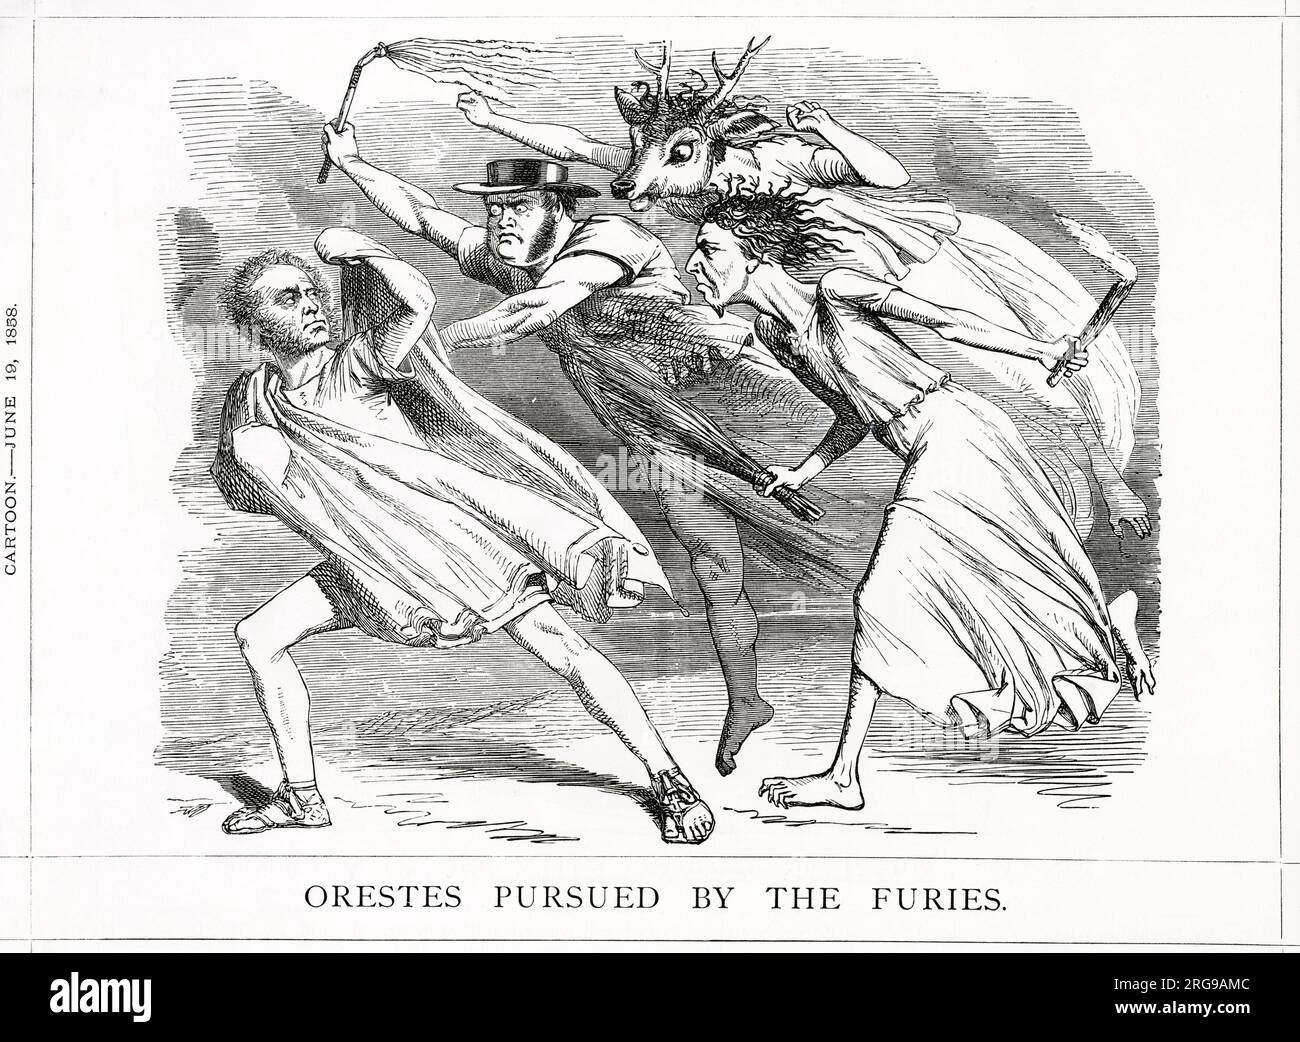 Cartoon, Orestes verfolgt von den Furien -- Lord Palmerston als Orestes darzustellen, verfolgt von John Bright, Roebuck und Disraeli, ein satirischer Kommentar zu einer parteiübergreifenden Kombination von Bright, Roebuck und Disraeli, um Palmerston aus dem Amt zu halten. Stockfoto